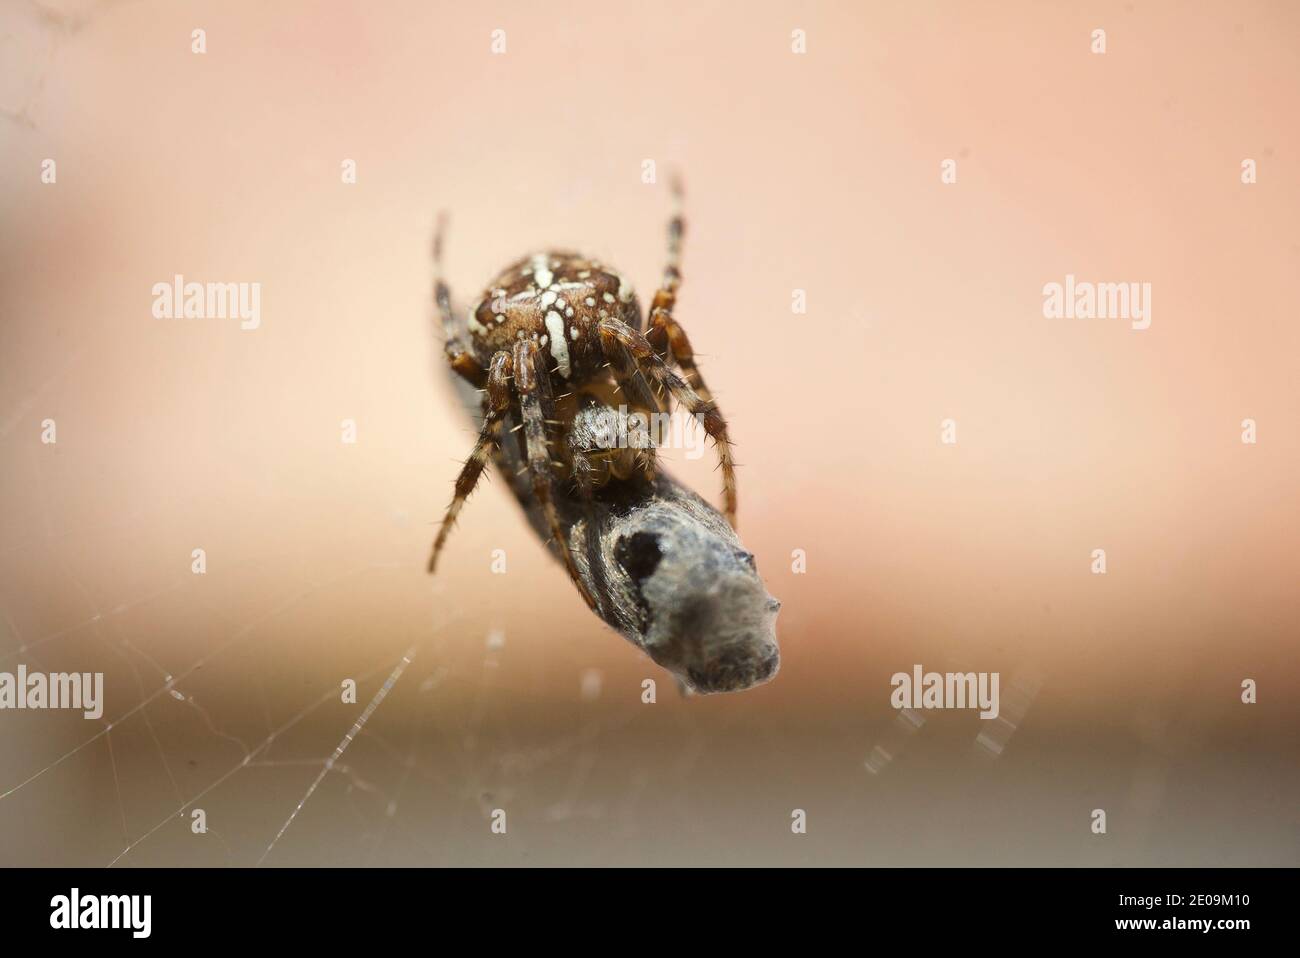 Ragno giardino europeo che avvolge una mosca nella sua rete, macro primo piano scatto. Un ragno che avvolge una mosca in una tela di seta. Araneus diadematus. Tessitore d'orbo coronato. Foto Stock